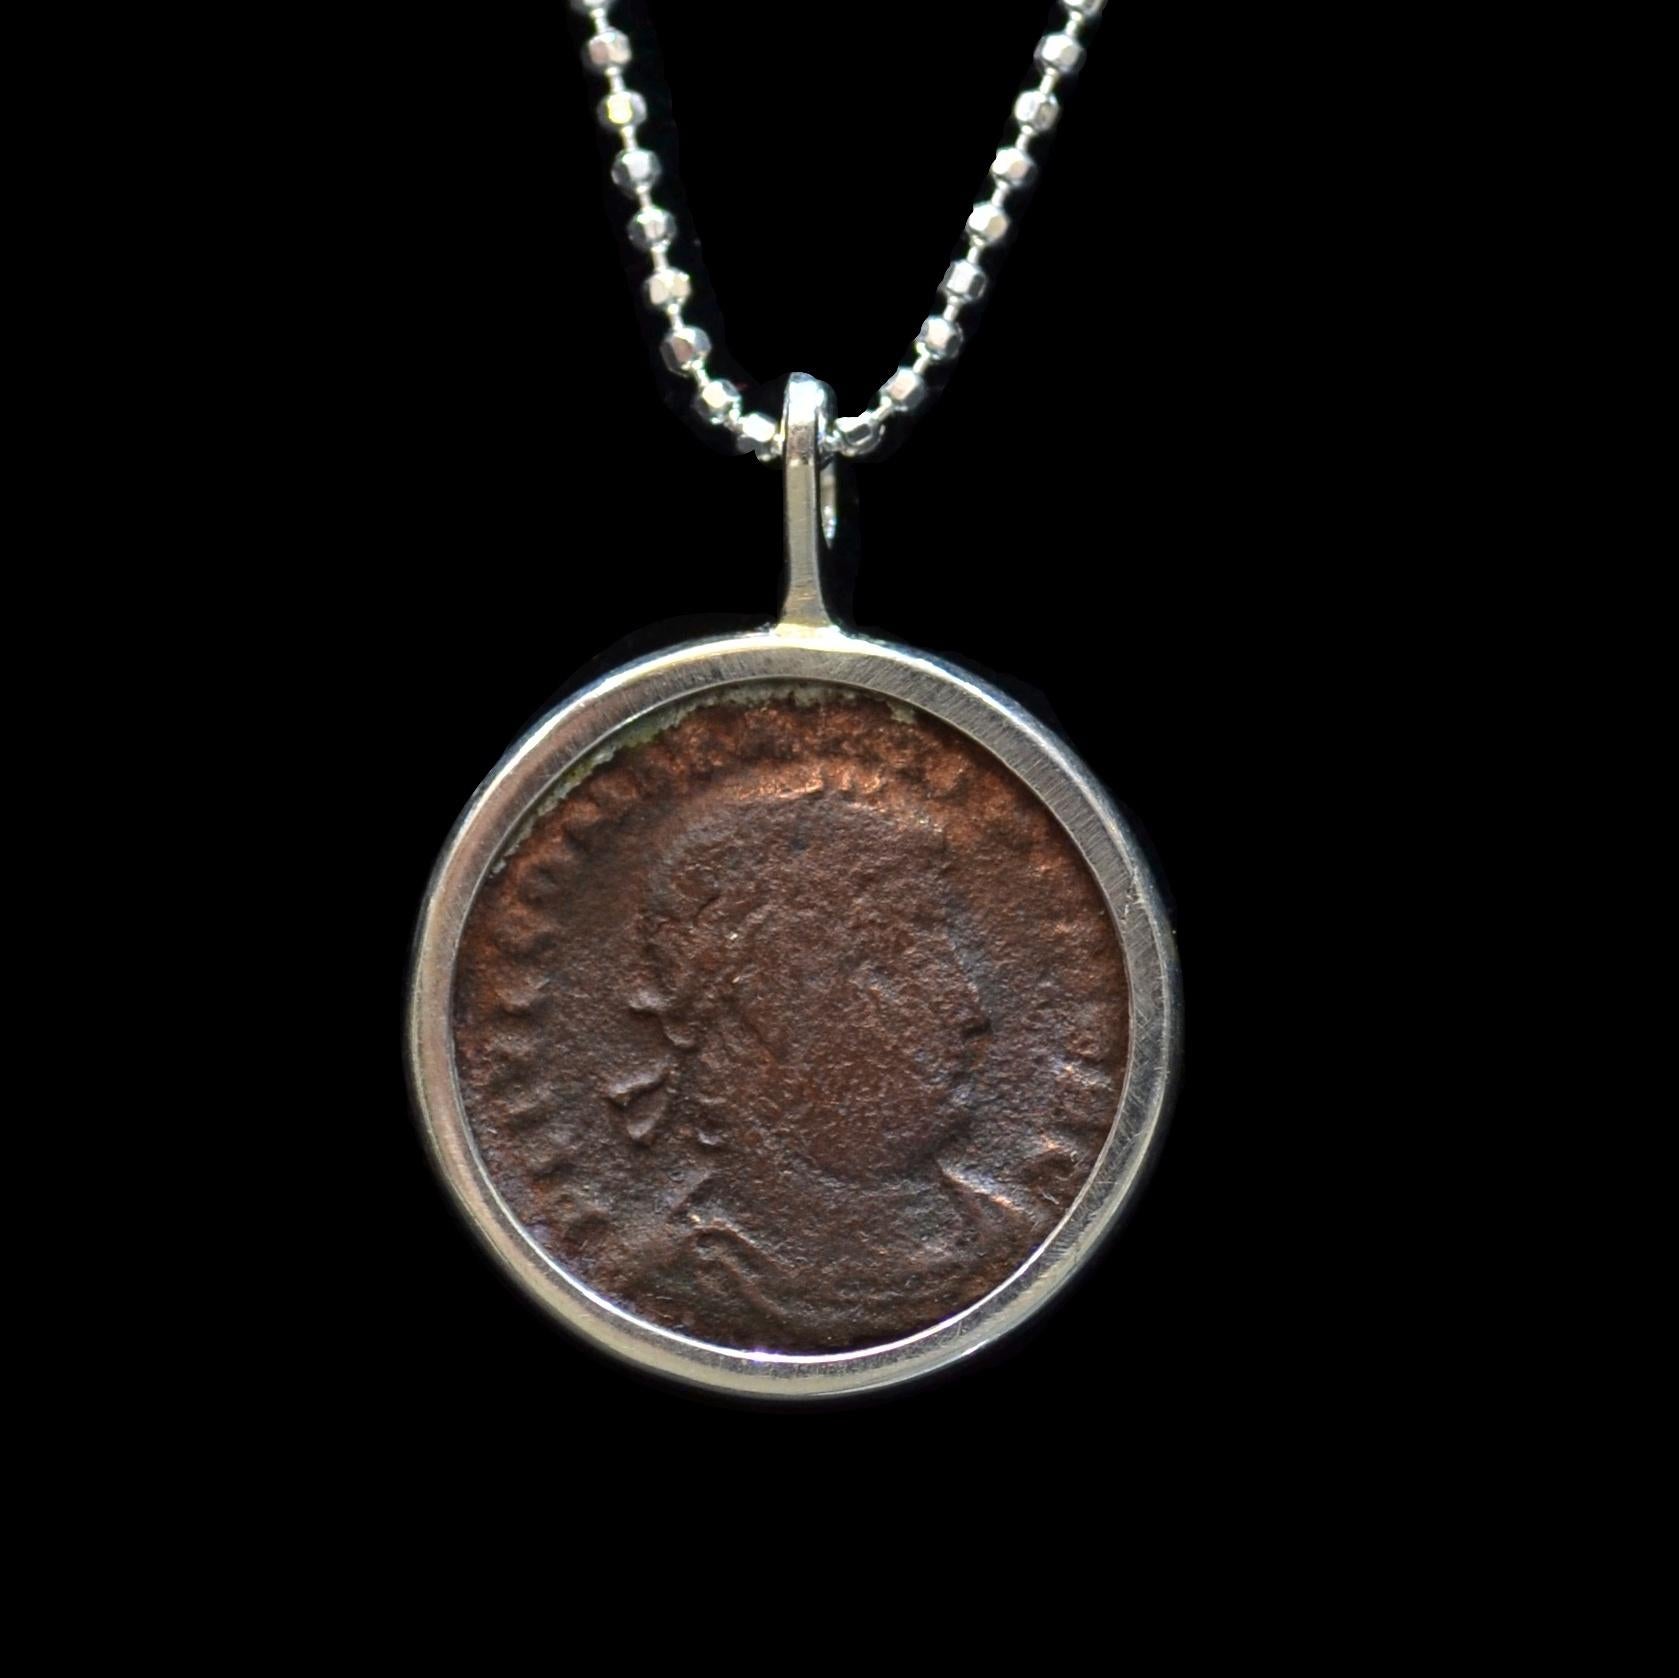 Authentische römische Bronzemünze  Ca. 337-361 n. Chr., montiert auf einer zeitgenössischen Silberhalskette. Bereit, getragen zu werden!

Flavius Julius Constantius, der zweite Sohn von Konstantin I. und Fausta, bestieg nach dem Tod des Vaters